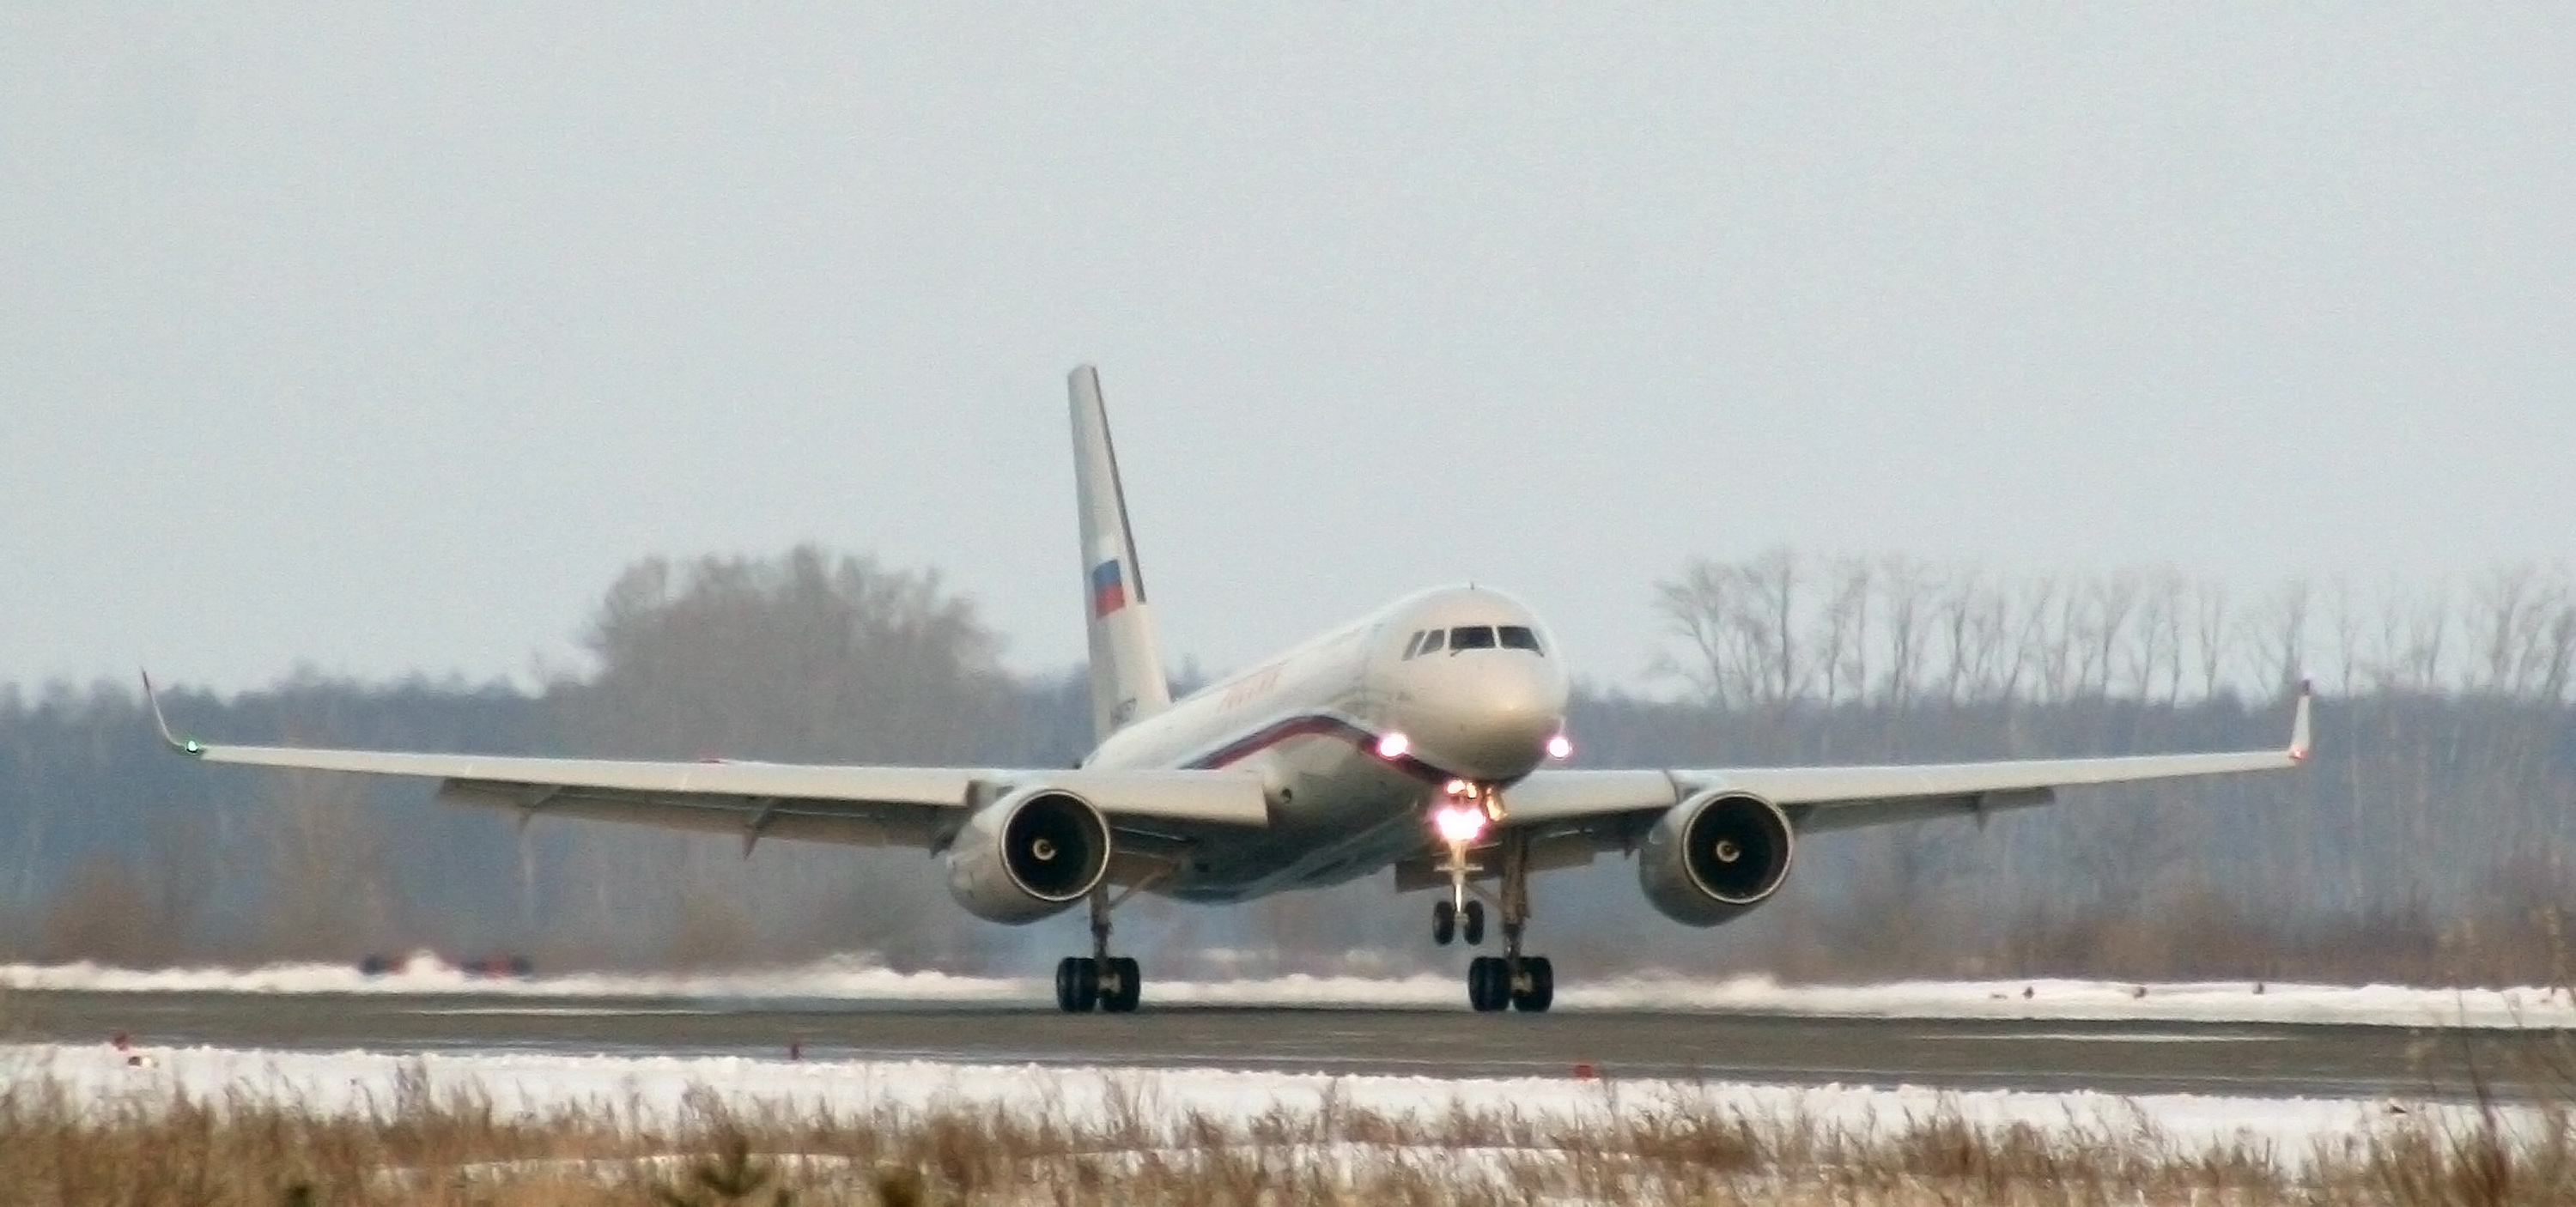 Что делал президентский самолет в Сирии: в аэропорту Дамаска был замечен Ту-204-300 из кортежа Путина - кадры